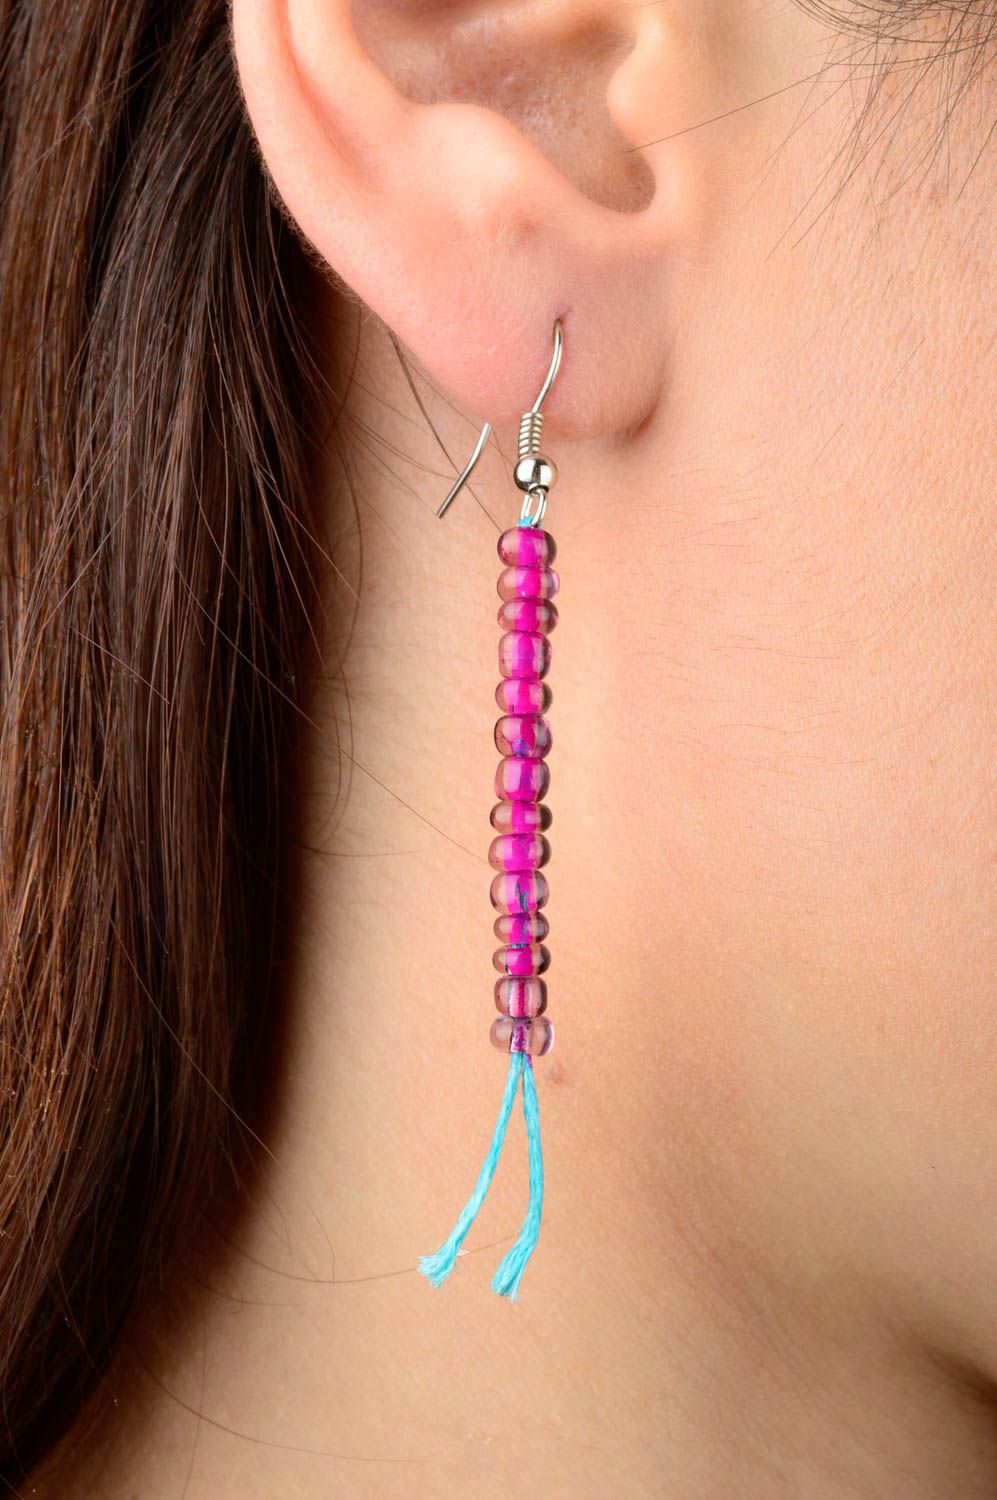 Handmade earrings designer earrings beads earrings for girl gift ideas photo 2